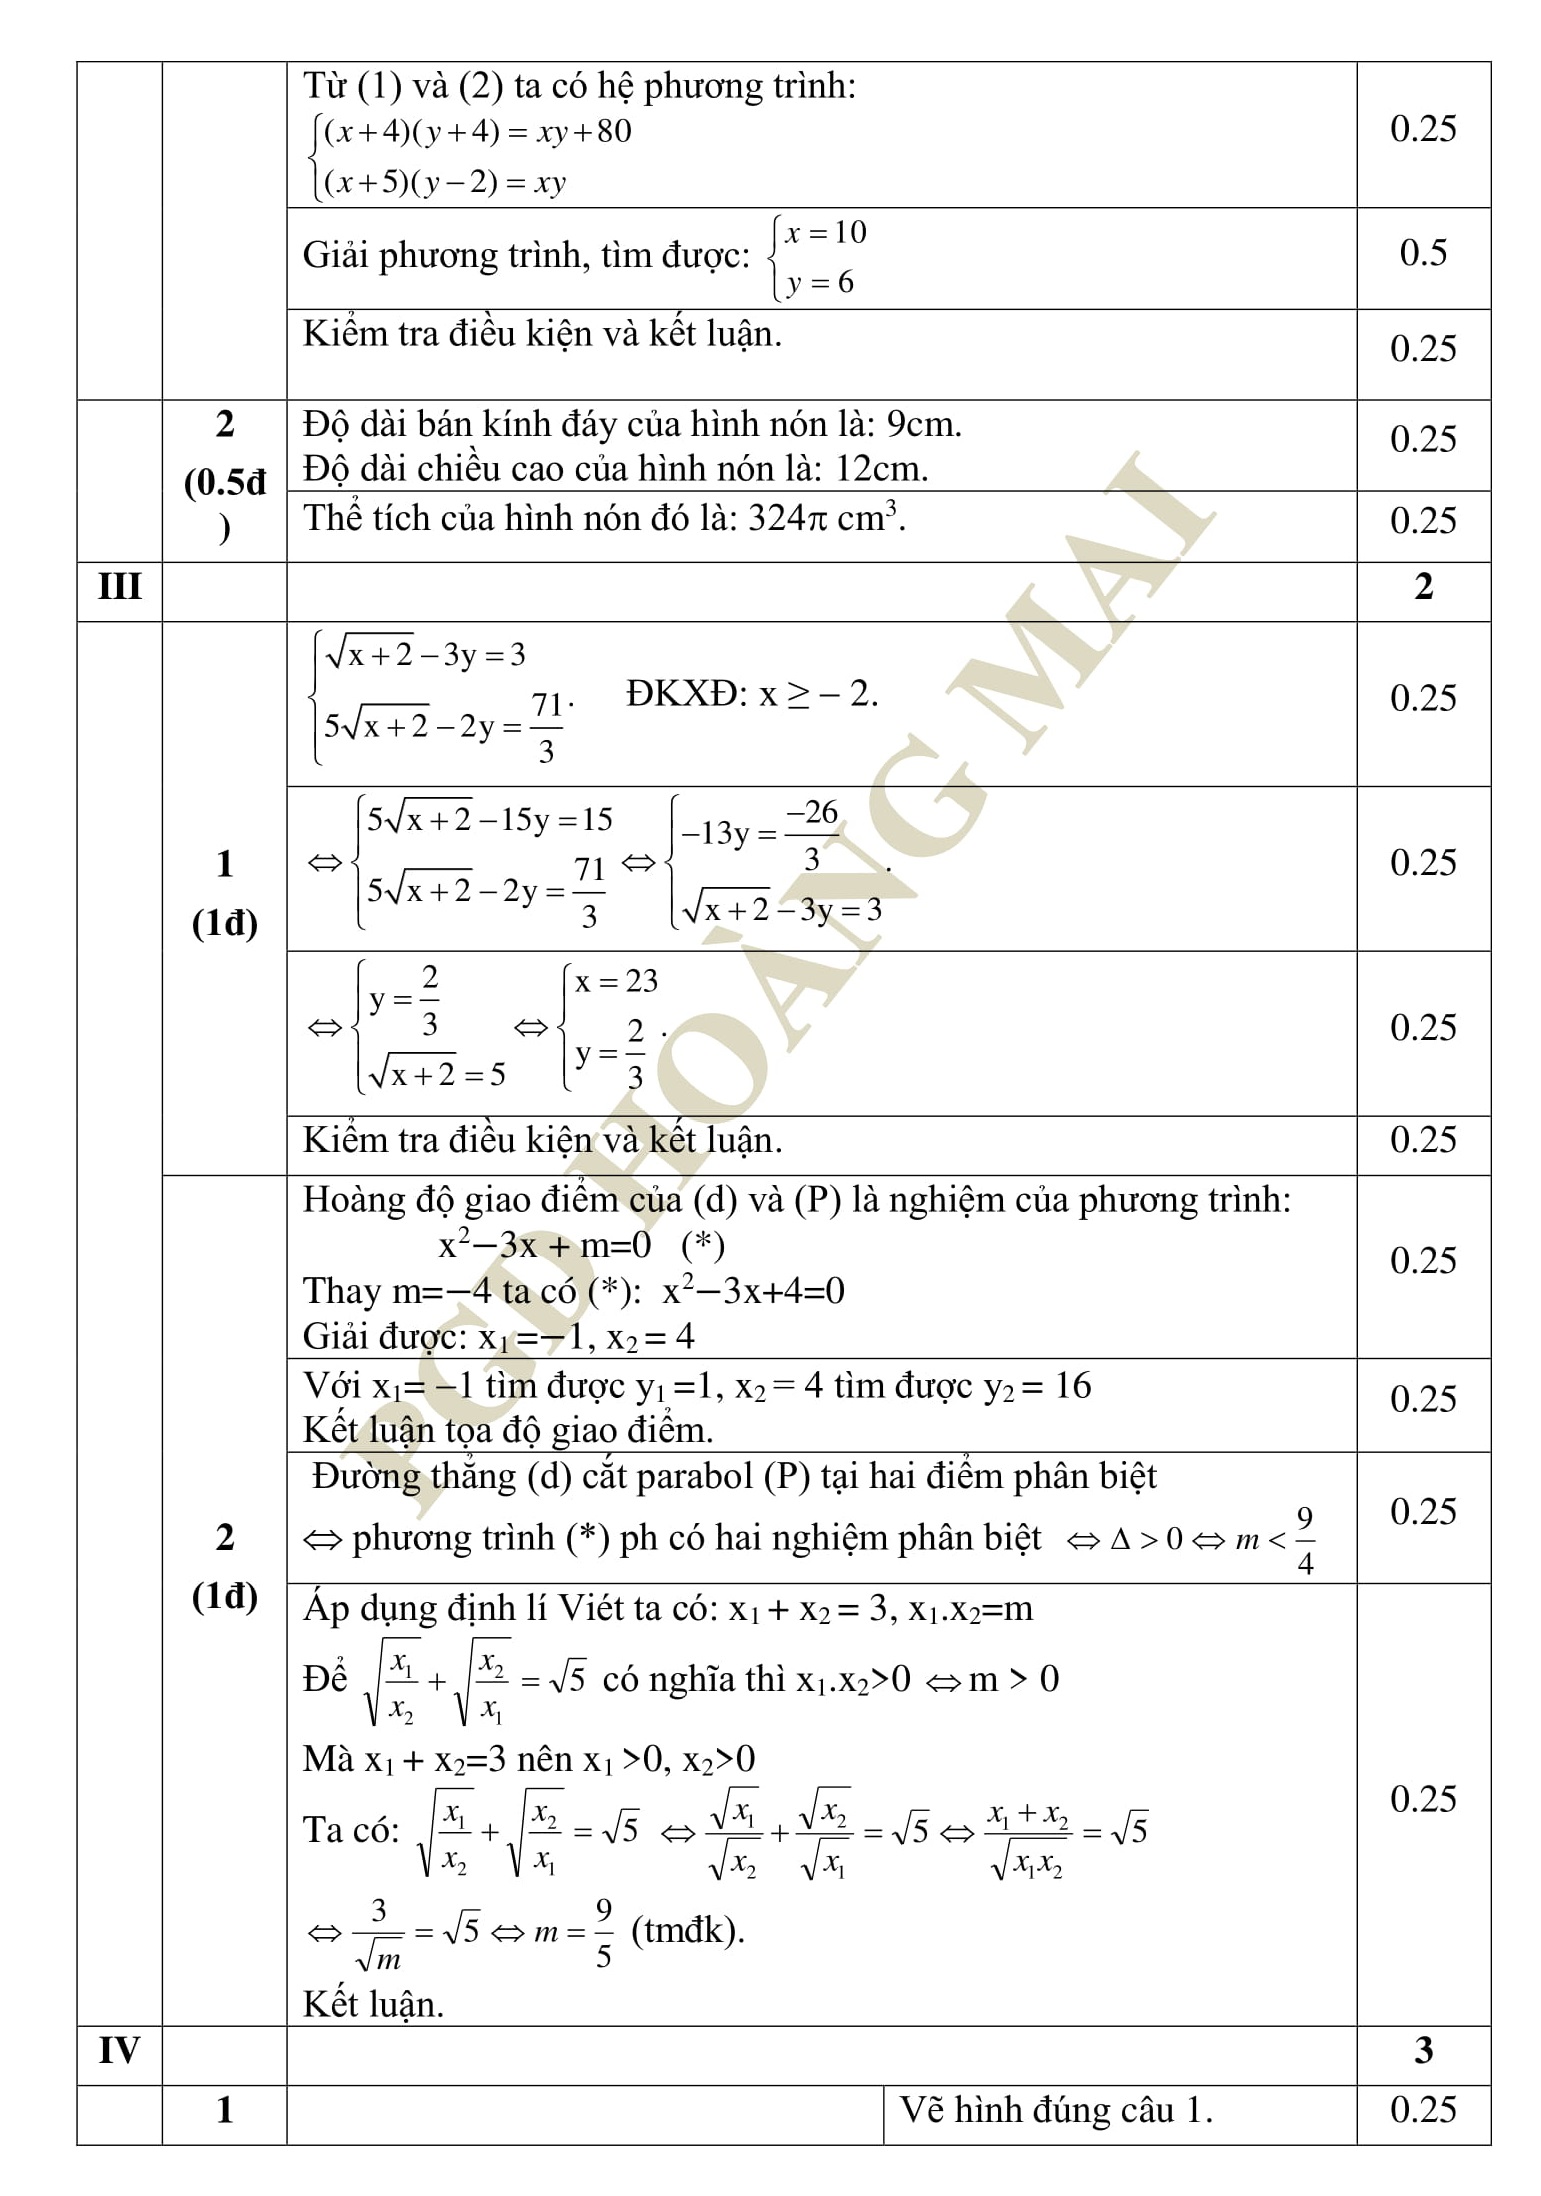 15 Đề thi khảo chất lượng HK2 toán 9 tổng hợp qua các năm